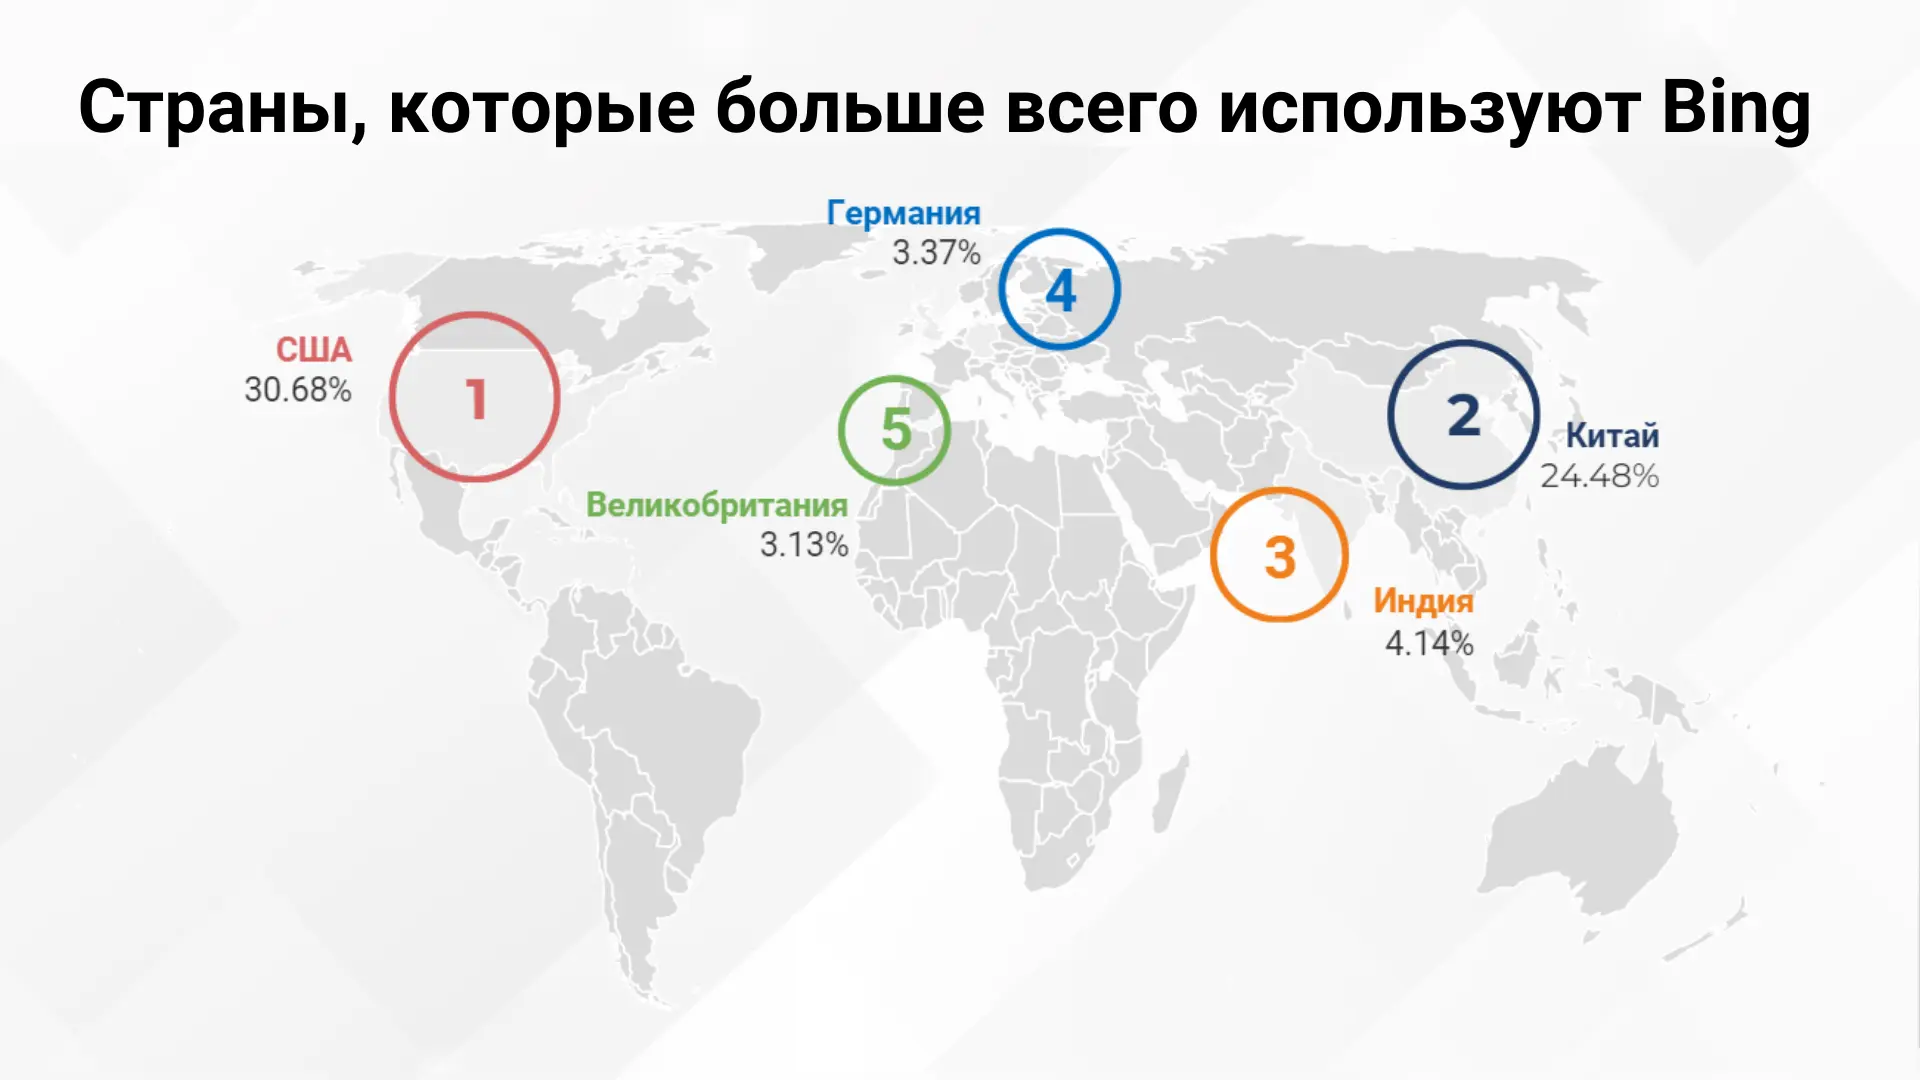 Страны, которые больше всего используют Bing